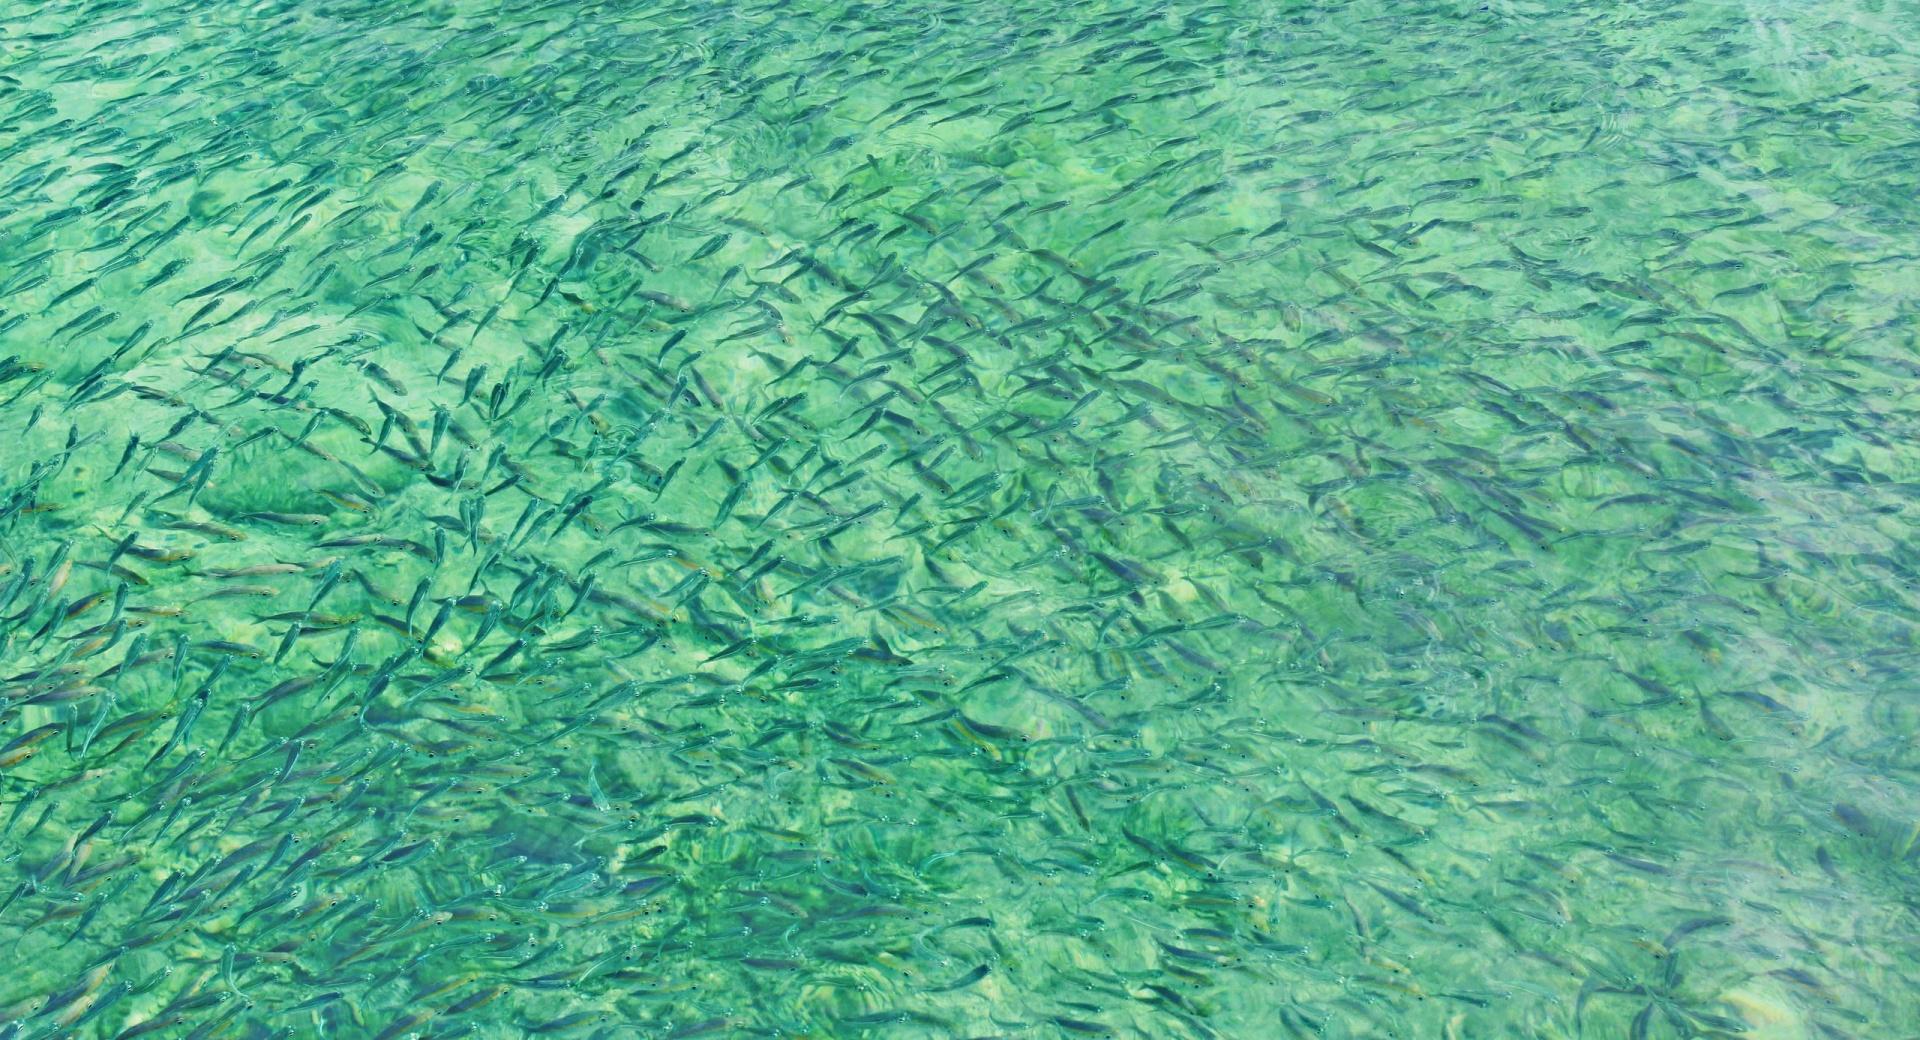 Ikan Ikan Kecil at 1600 x 1200 size wallpapers HD quality